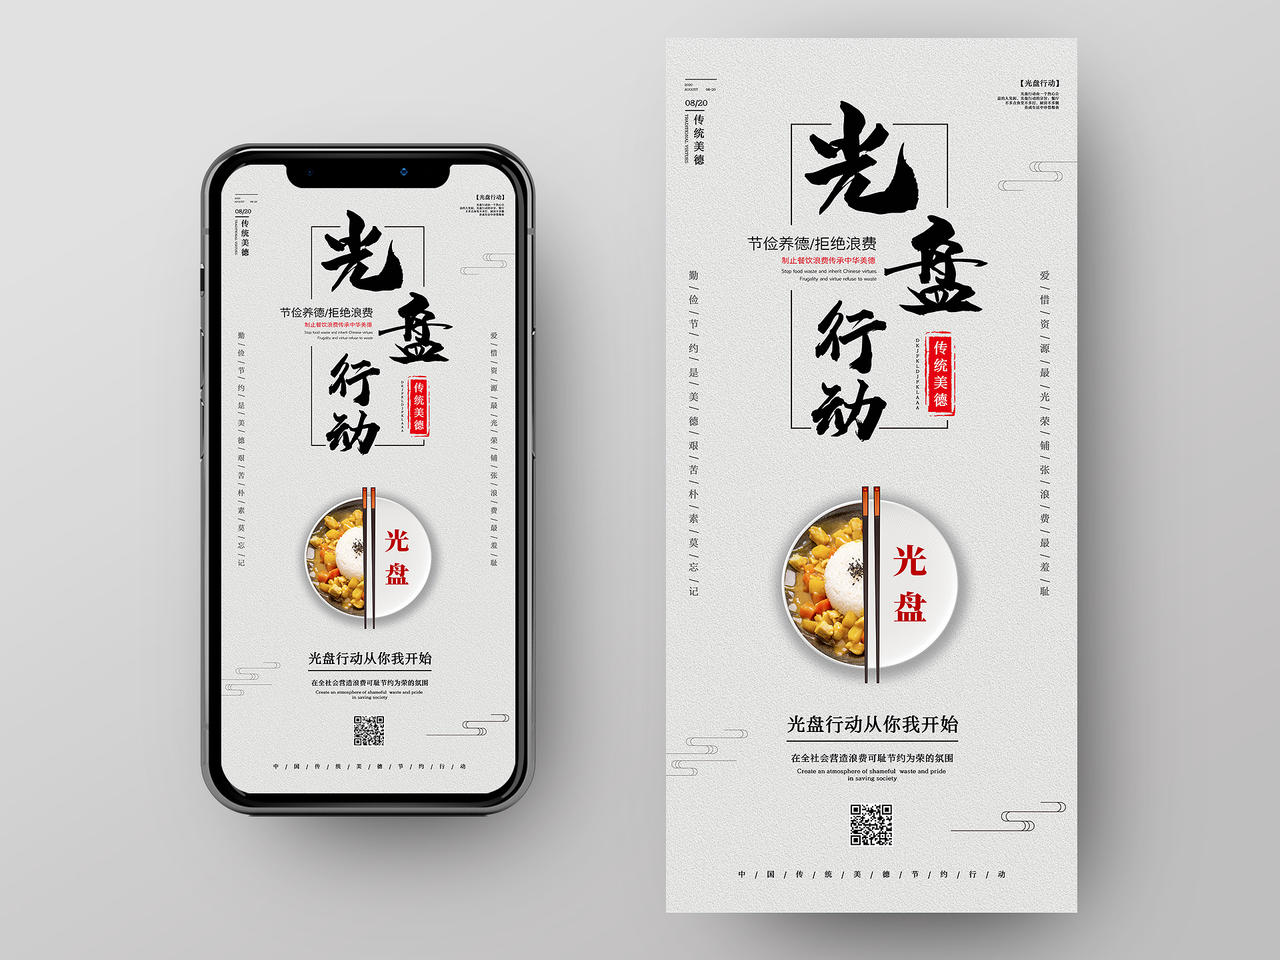 白色中国风光盘行动公益活动手机海报光盘行动手机海报